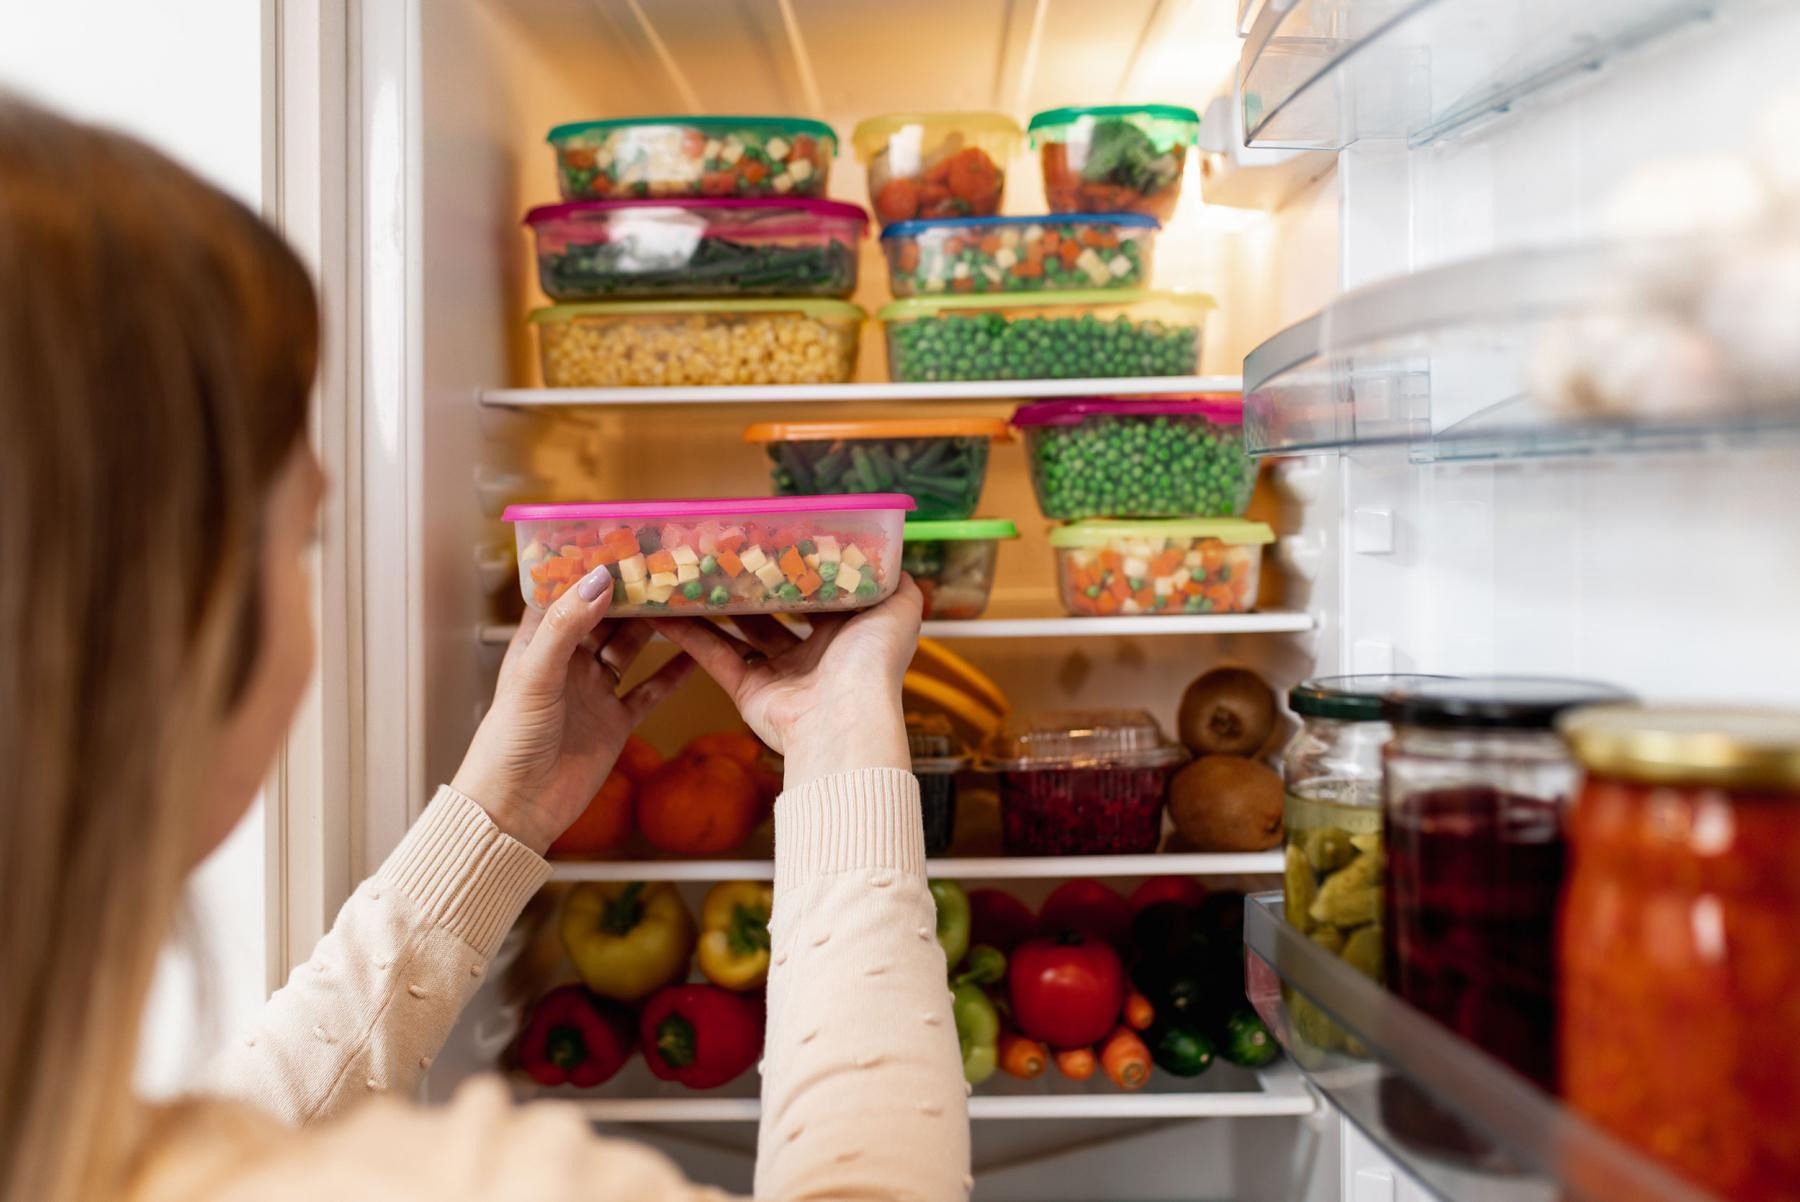 Có nên tiếp tục sử dụng thực phẩm trong tủ lạnh sau khi mất điện? - 1